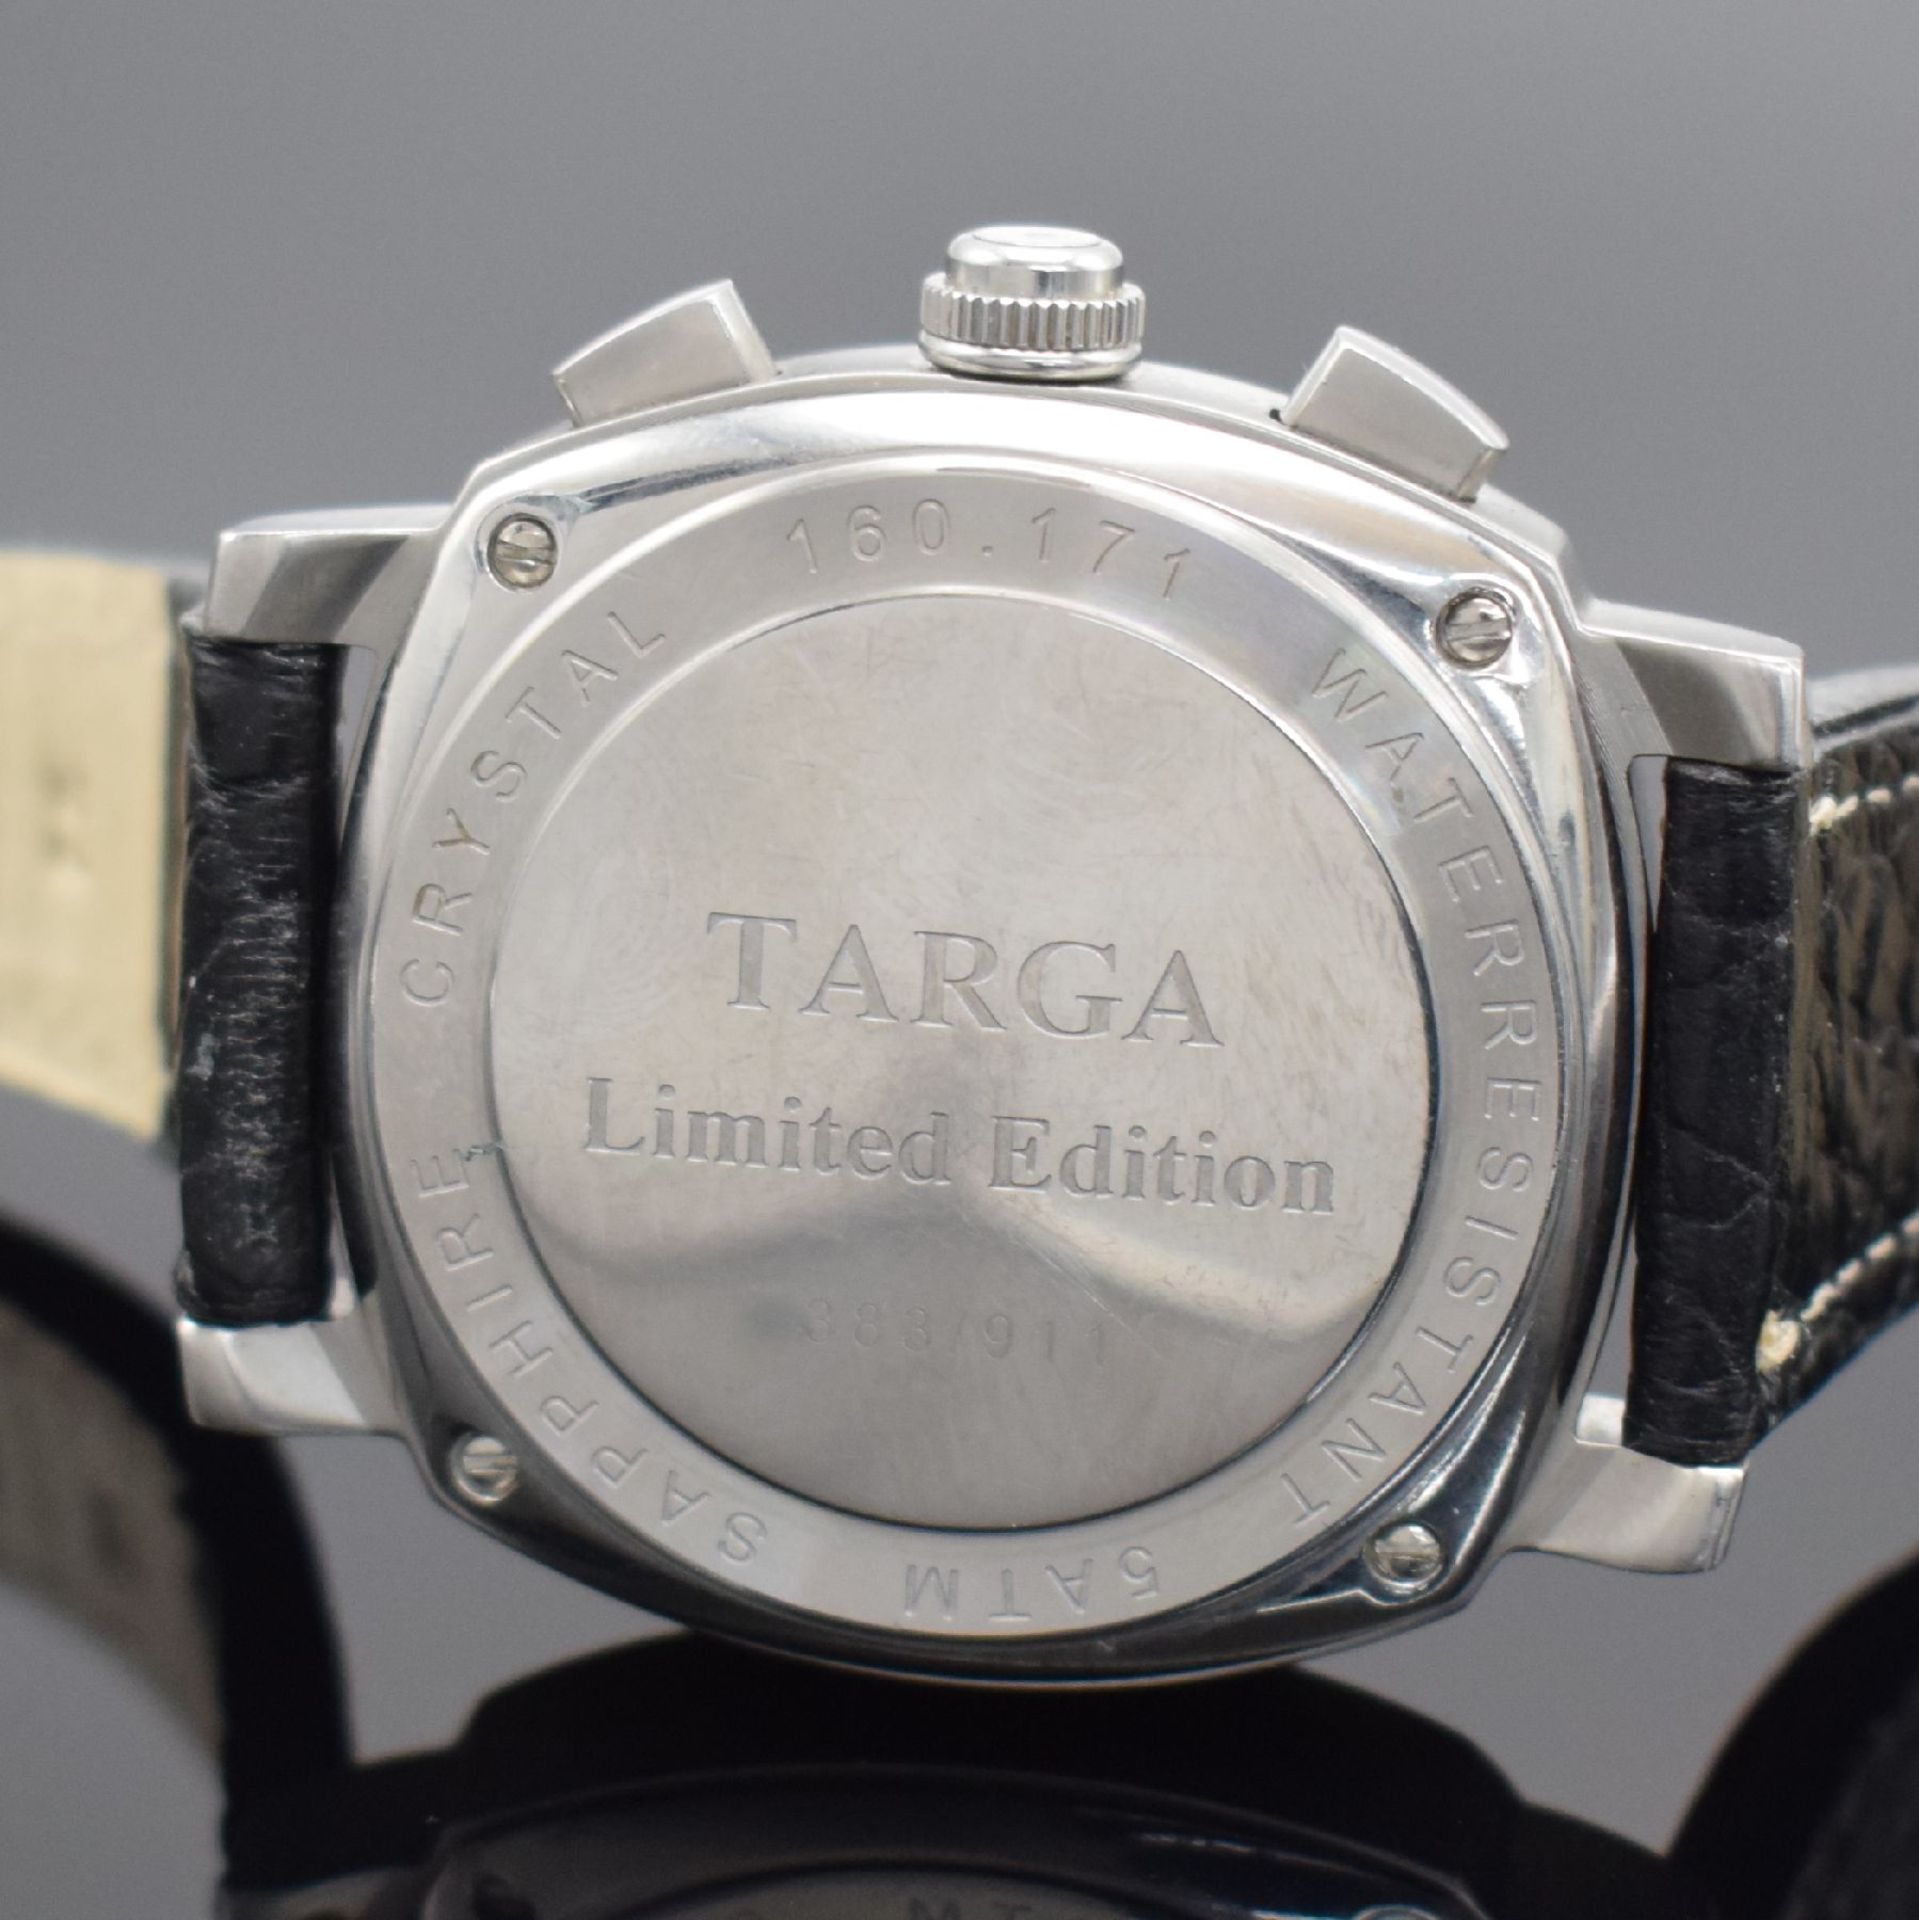 JEAN MARCEL Targa 911 limitierter Herrenchronograph mit - Bild 3 aus 4